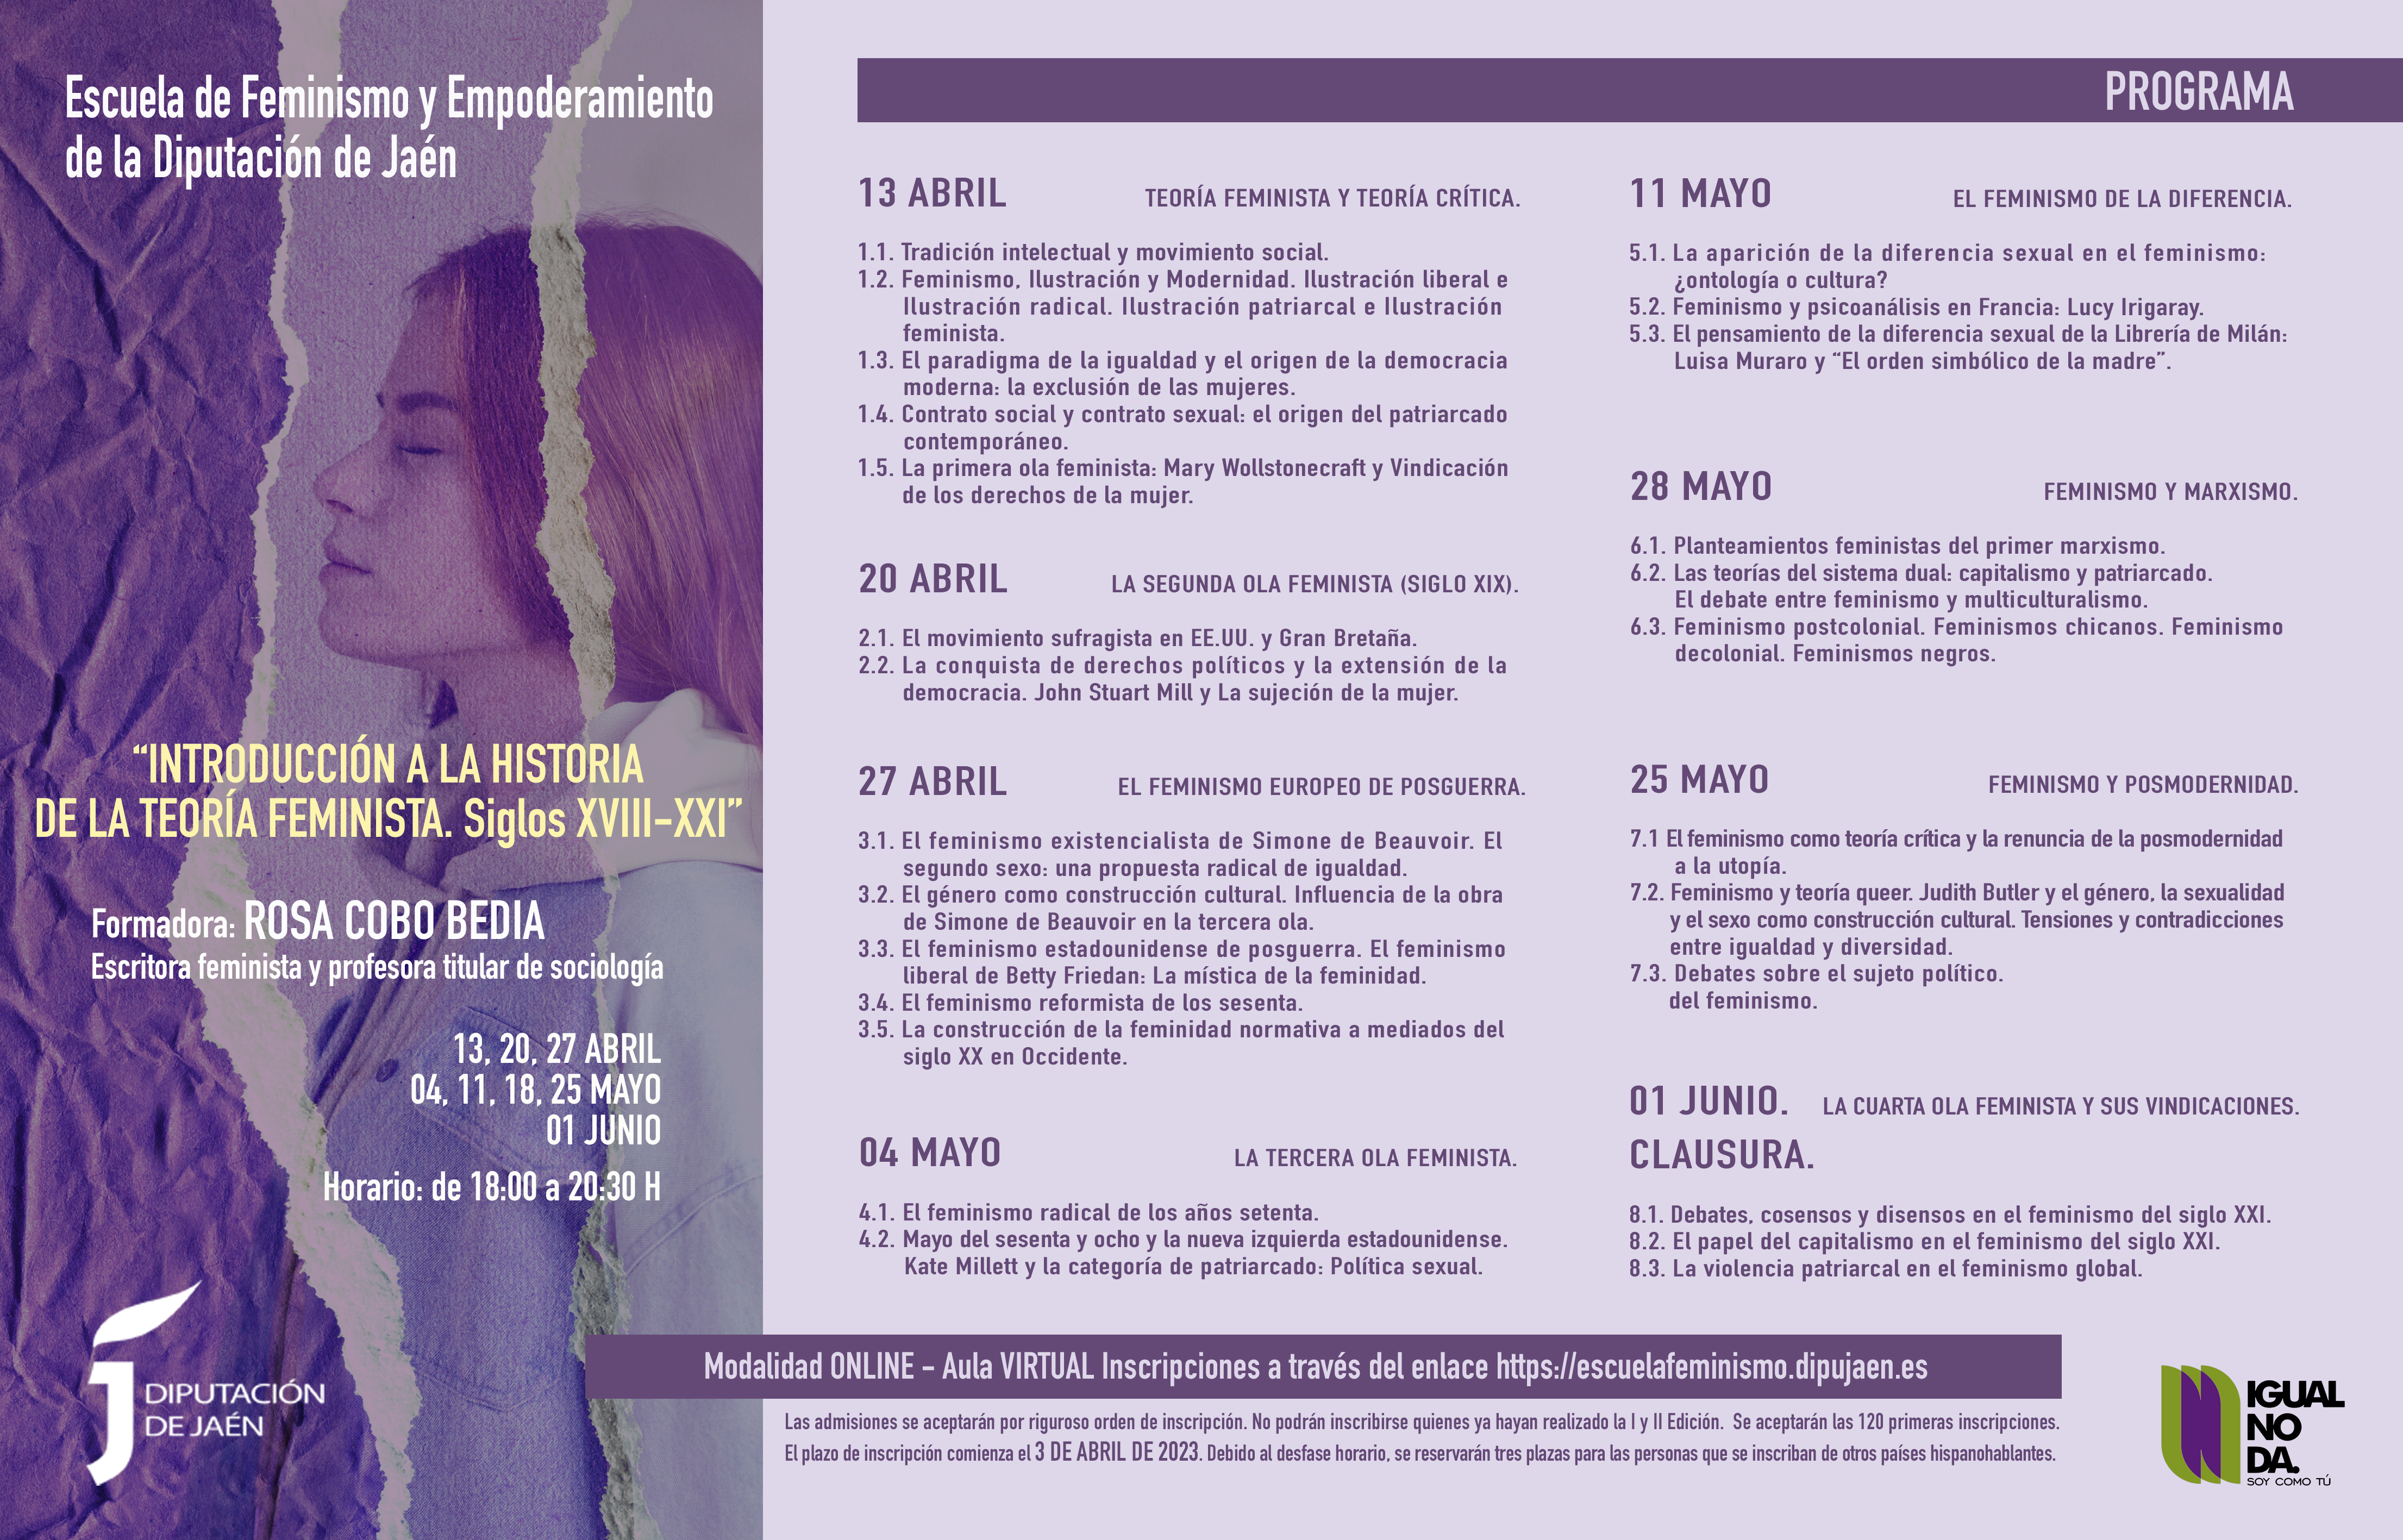 Programa escuela de feminismo [JPG de 5,83 MB] | Diputación de Jaén | Ampliar imagen